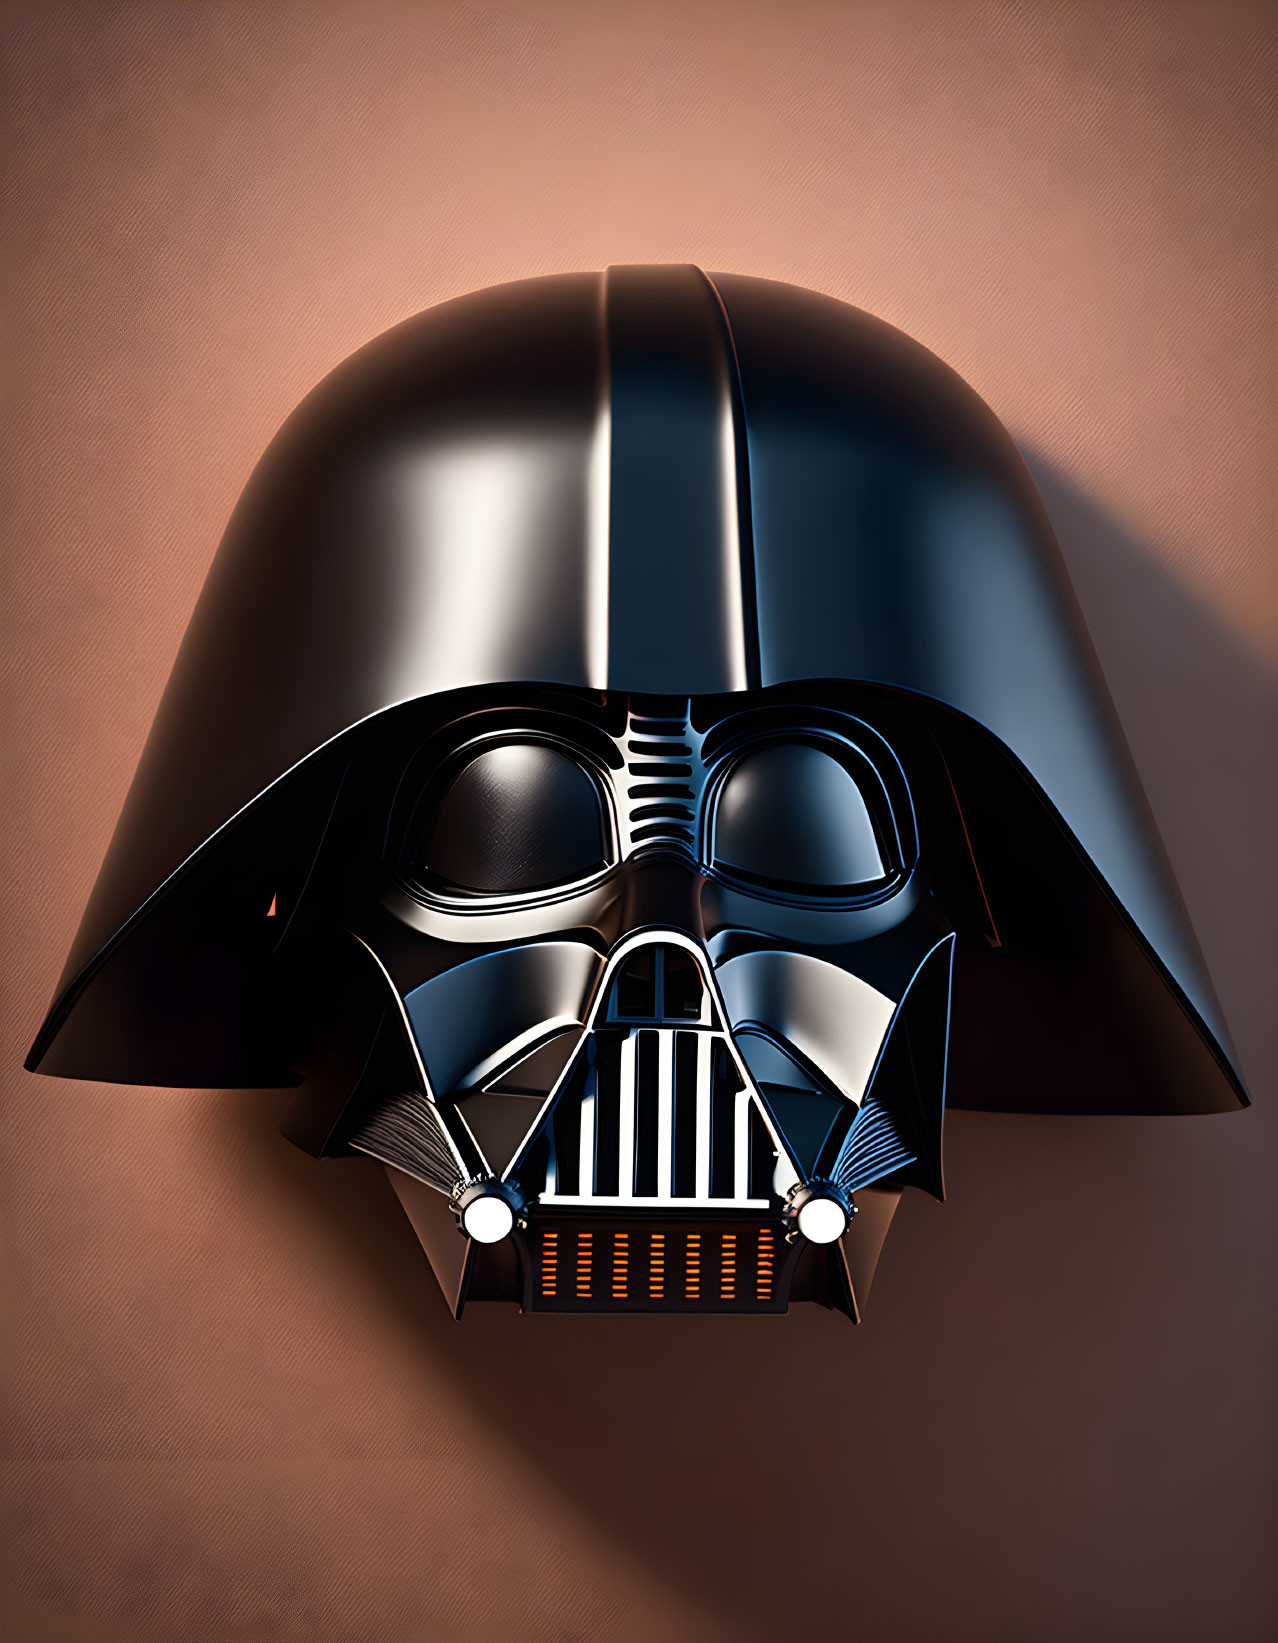 Detailed Darth Vader helmet illustration on tan background